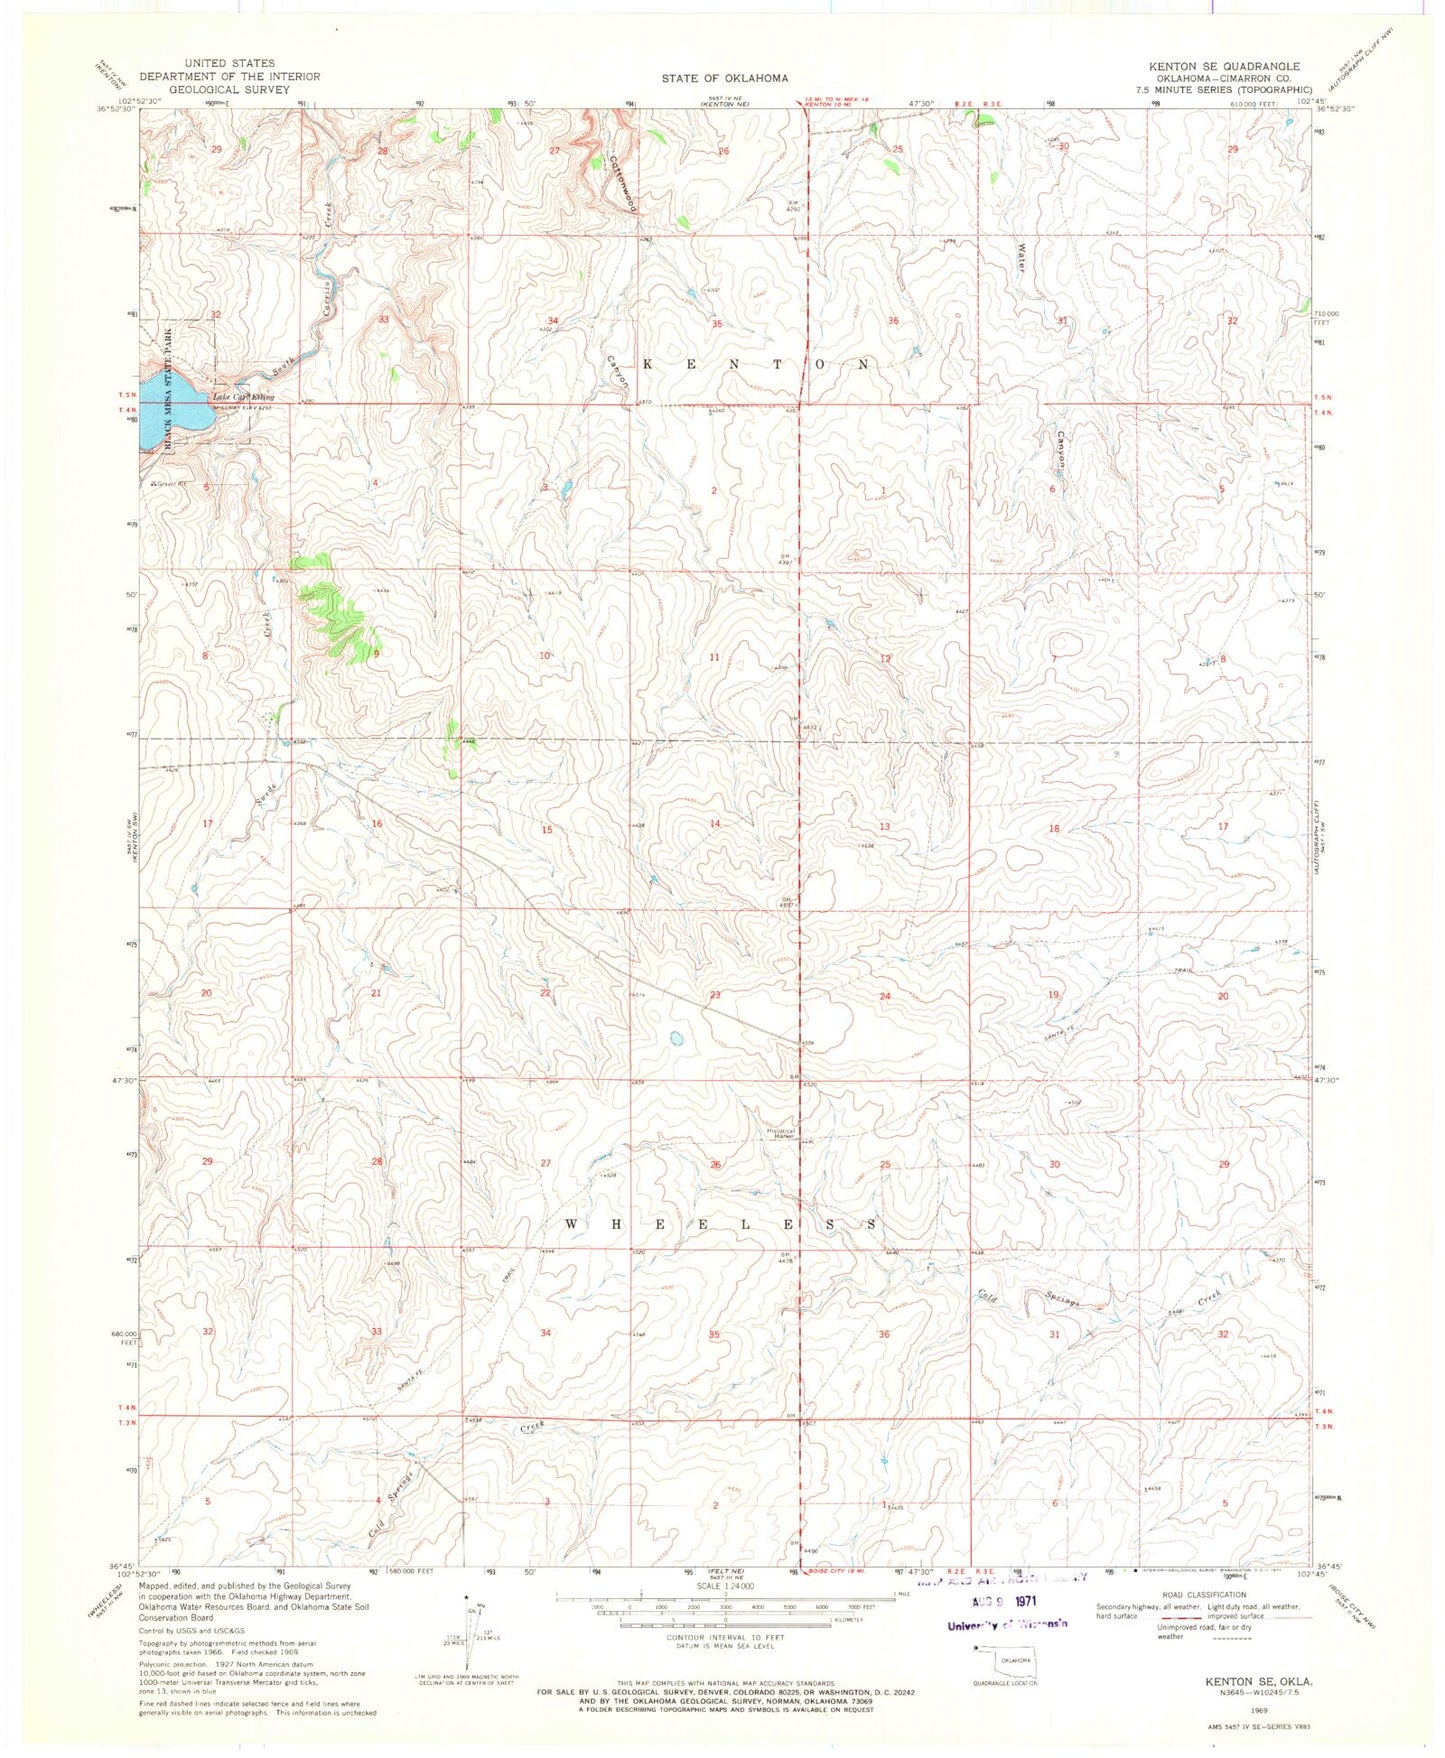 Classic USGS Kenton SE Oklahoma 7.5'x7.5' Topo Map Image